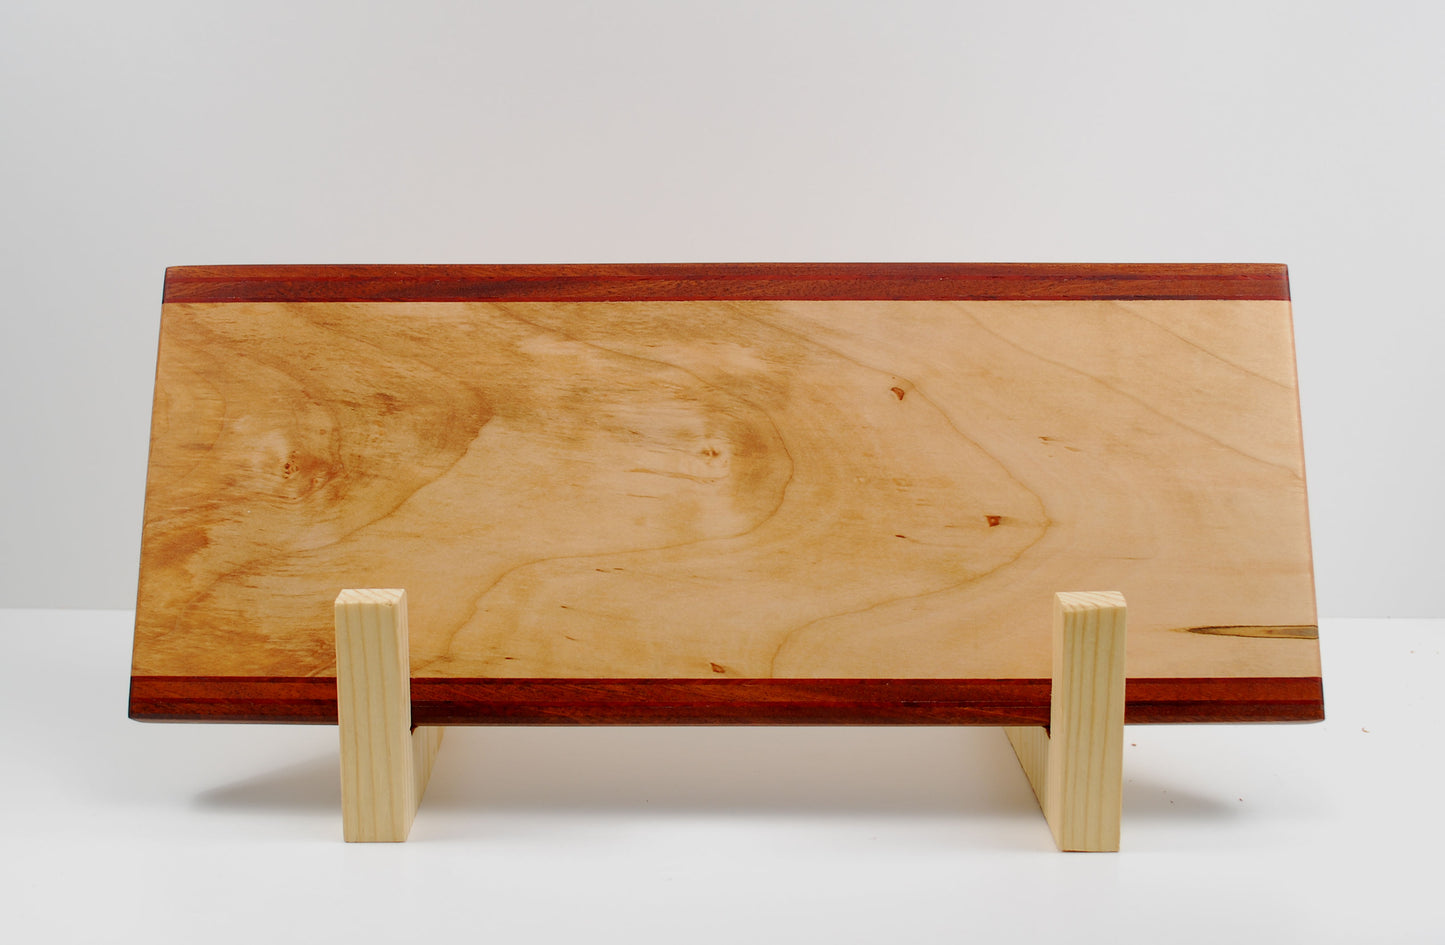 Wood Charcuterie Board - Ambrosia Maple and Sapele Wood